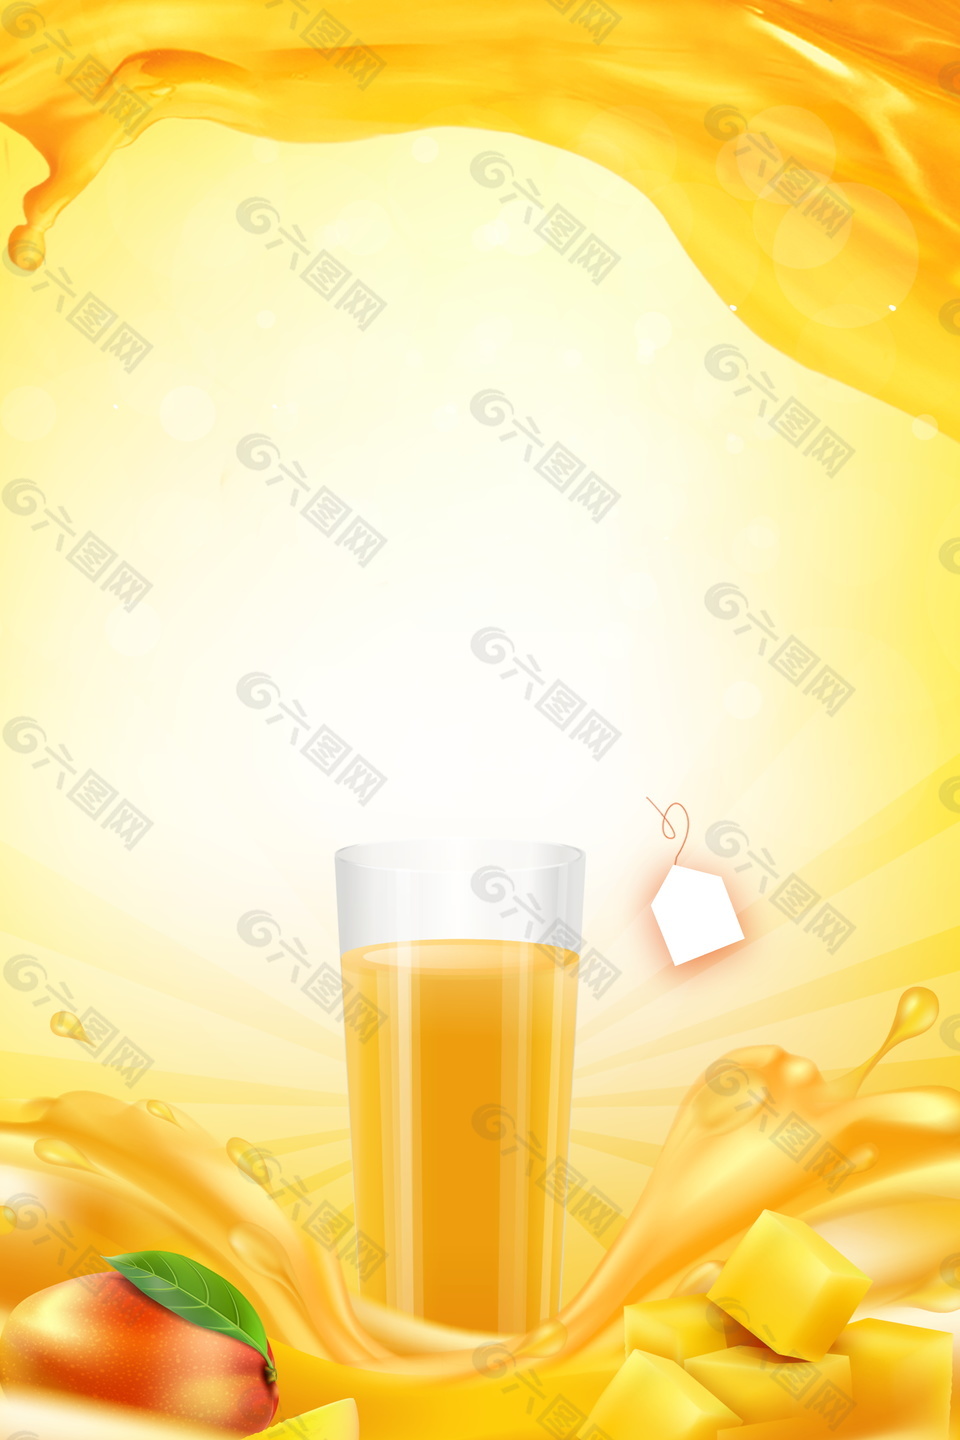 夏日橙汁饮料海报背景设计